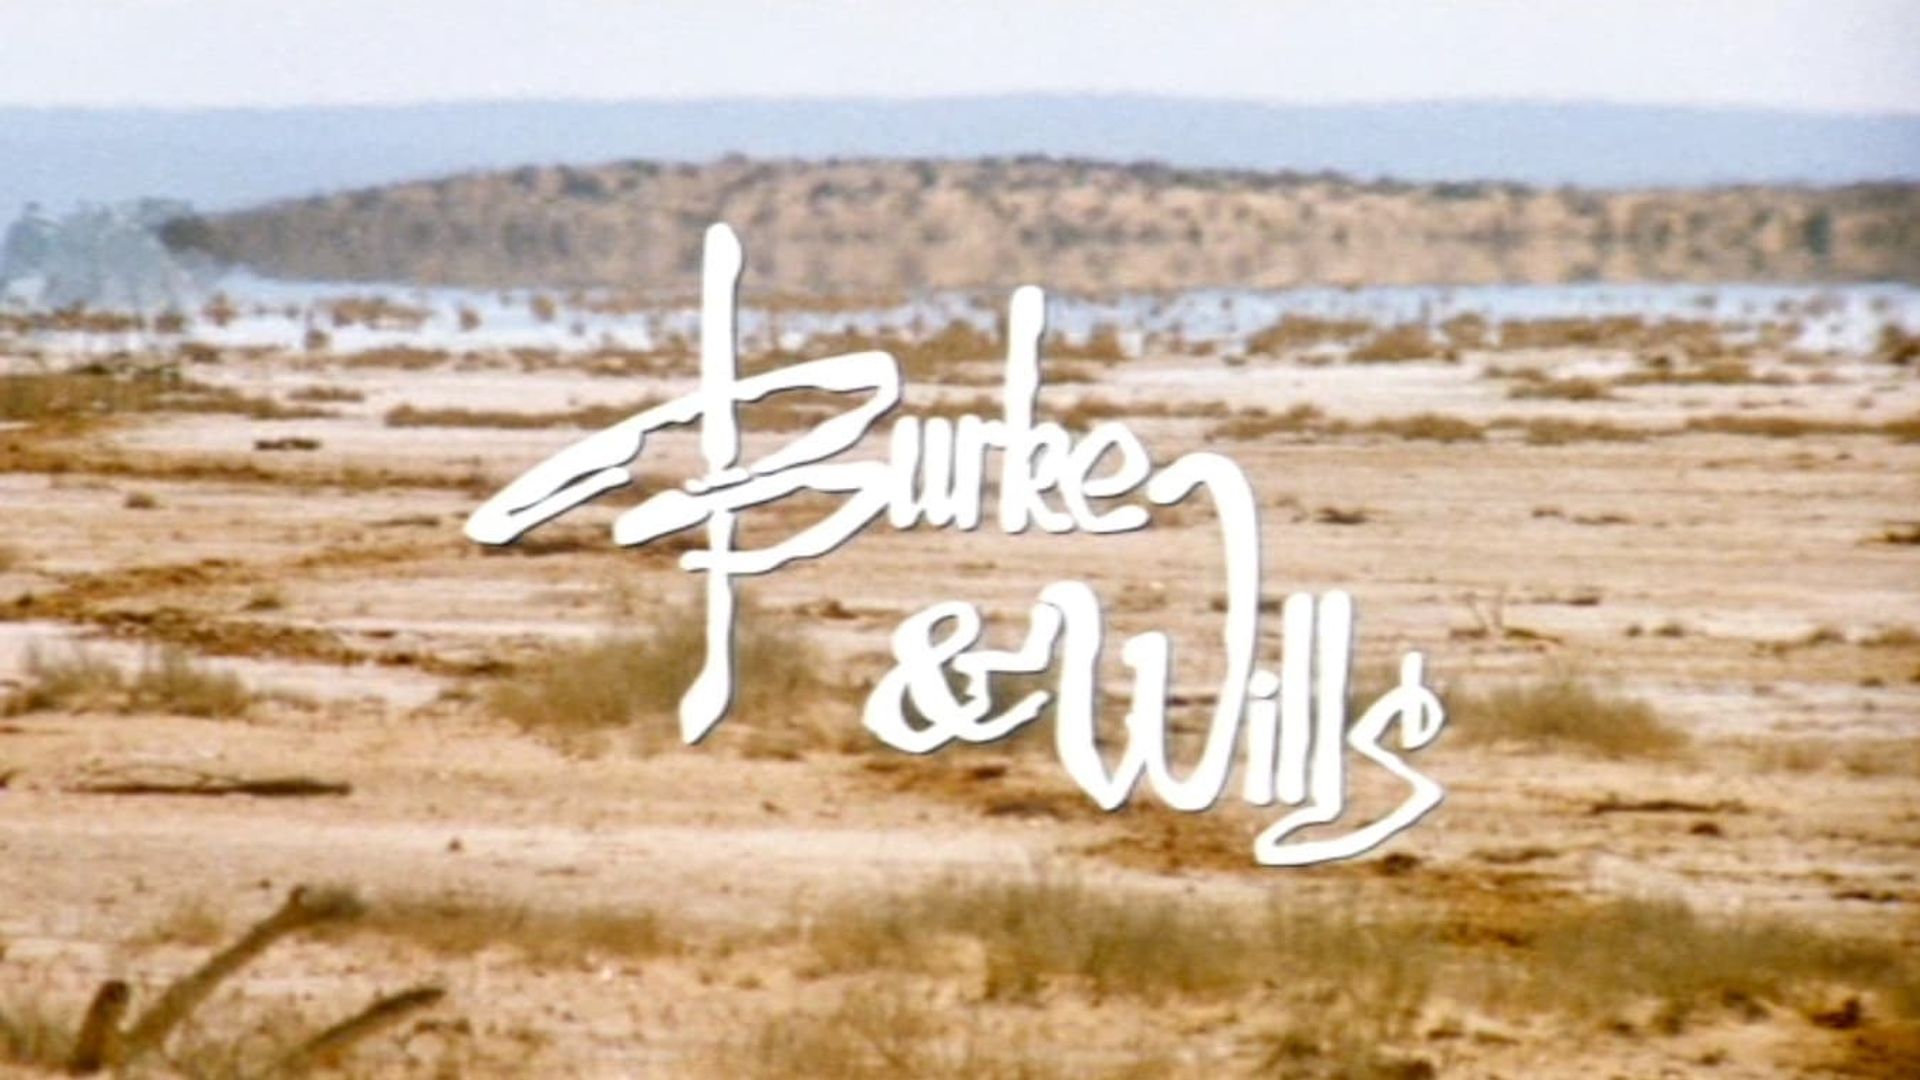 Burke & Wills background